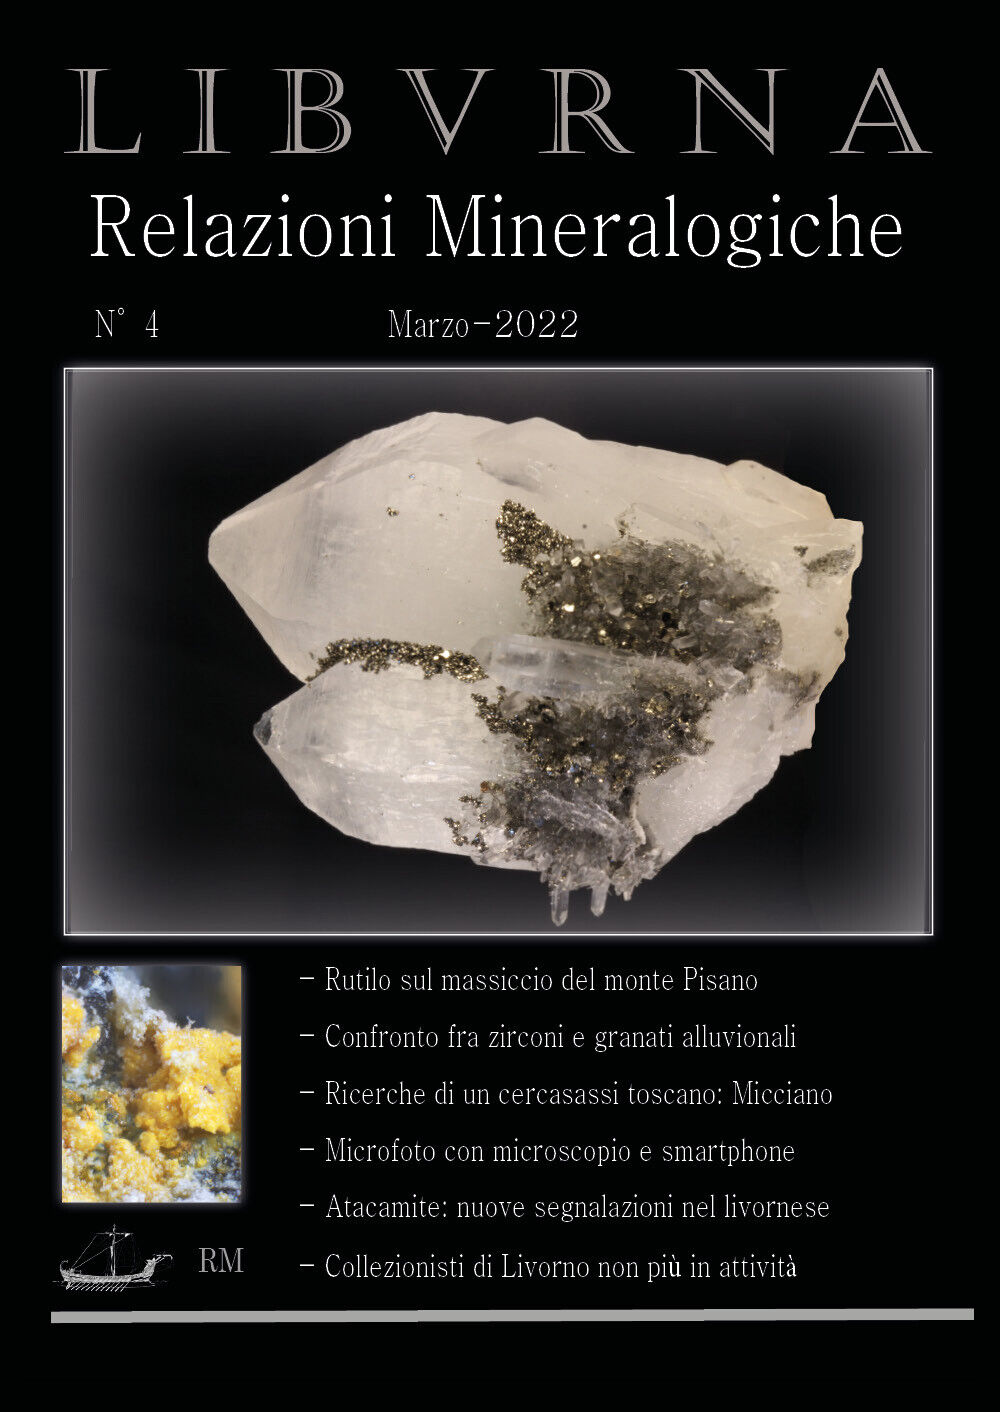 LIBVRNA N?4, Marzo 2022, Relazioni mineralogiche di Marco Bonifazi,  2022,  Youc